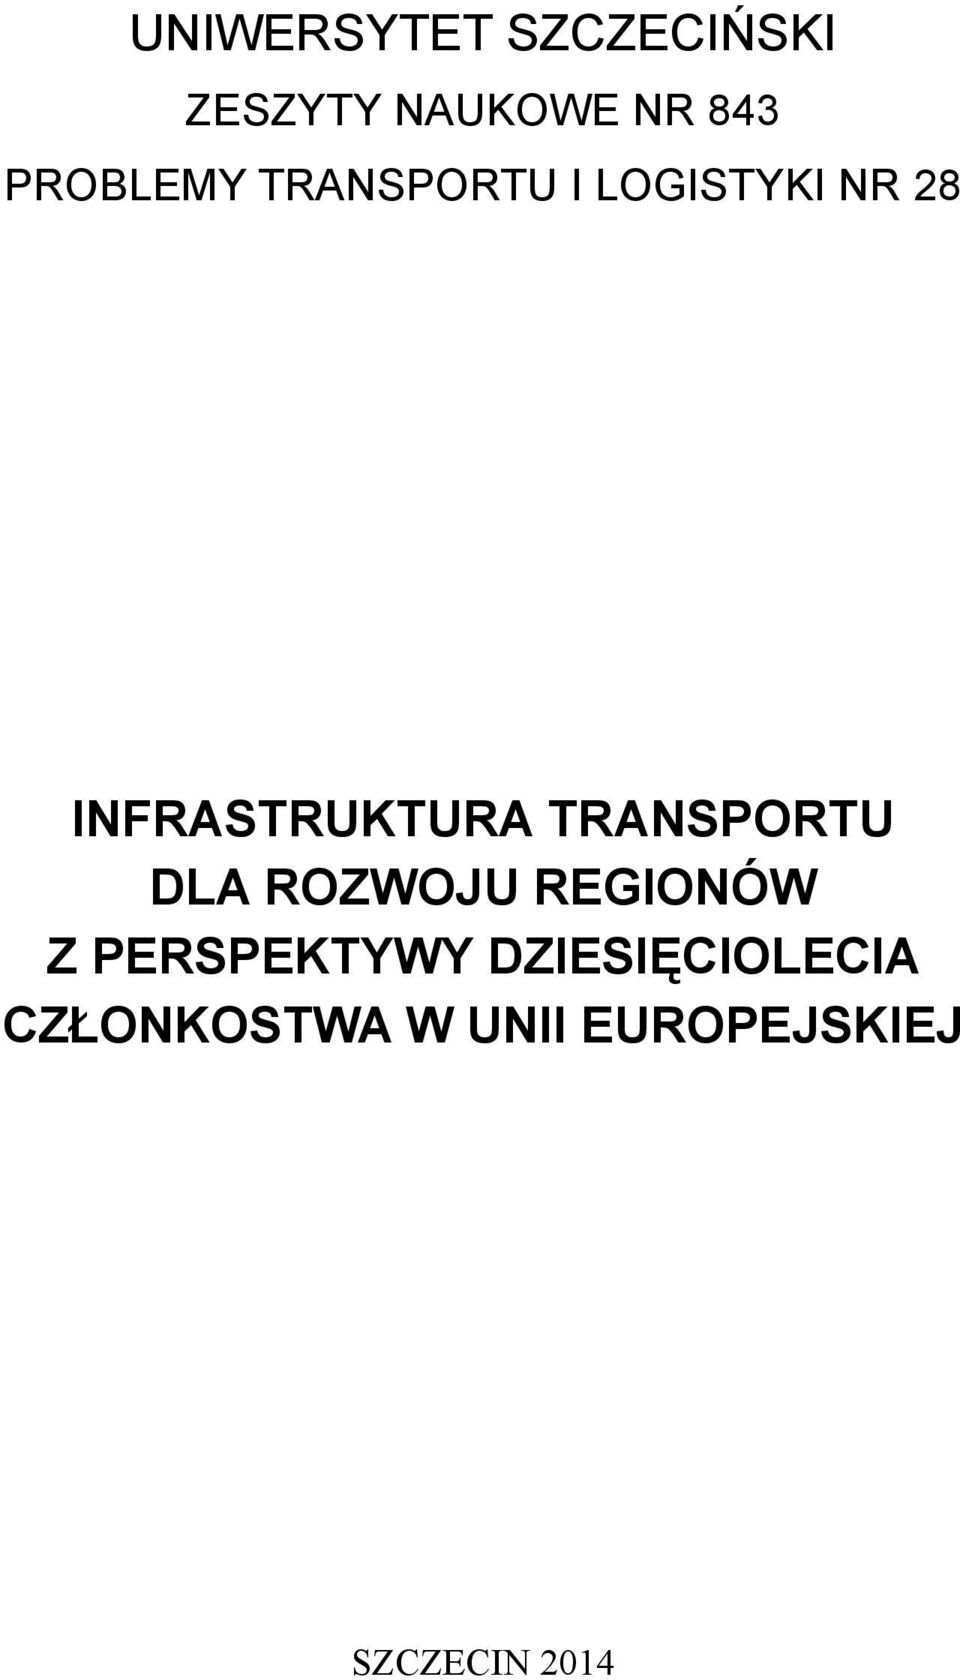 Infrastruktura transportu dla rozwoju regionów Z